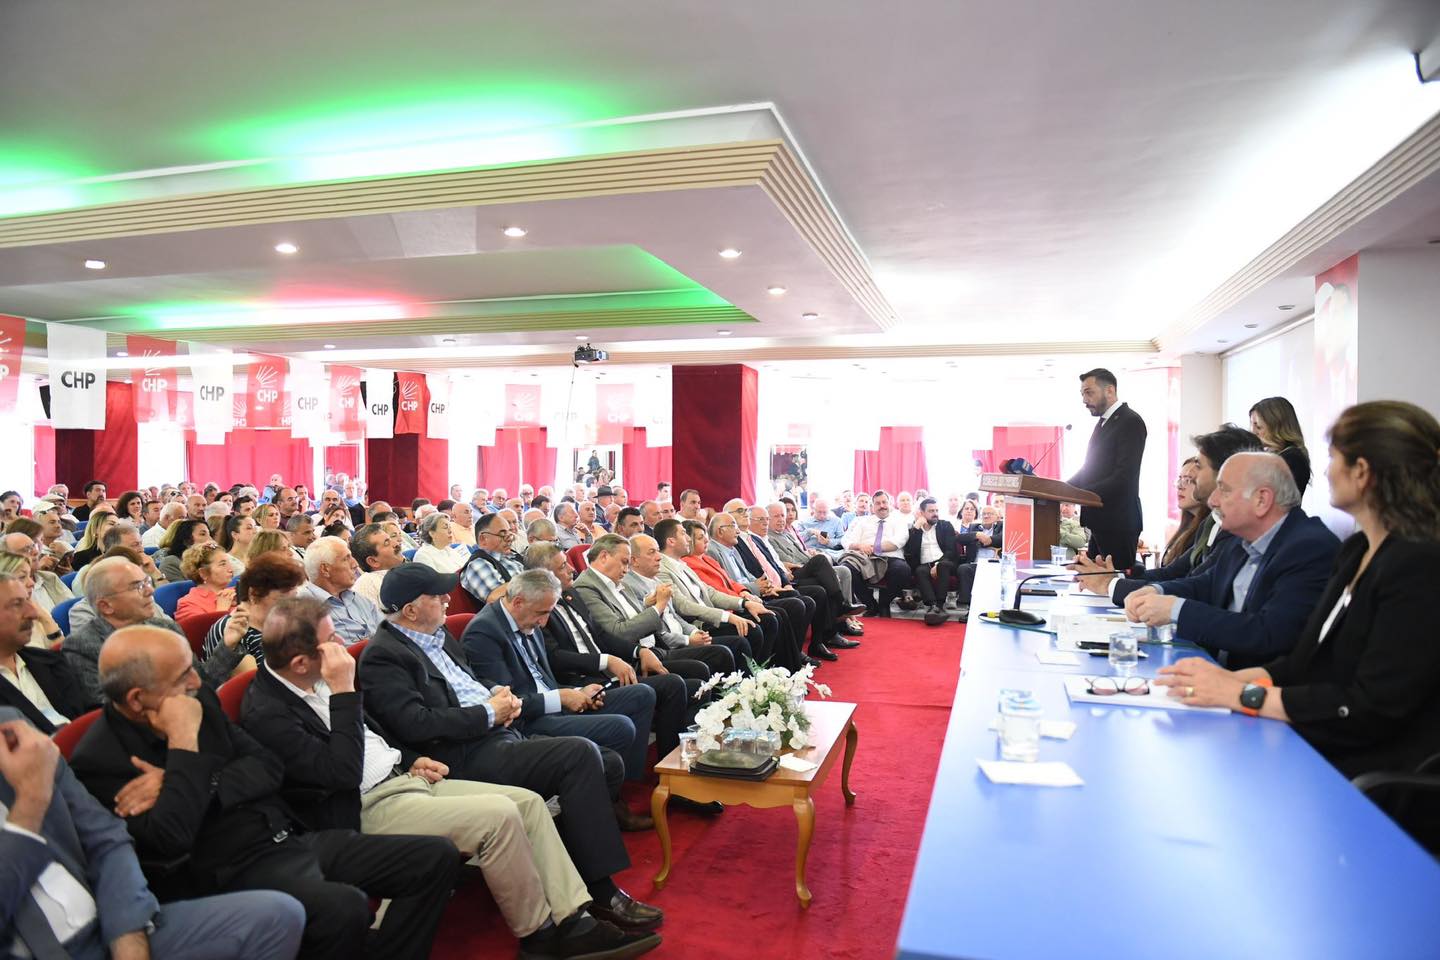 CHP Altınordu İlçe Başkanlığı, İlçe Danışma Kurulu Toplantısı Gerçekleştirdi